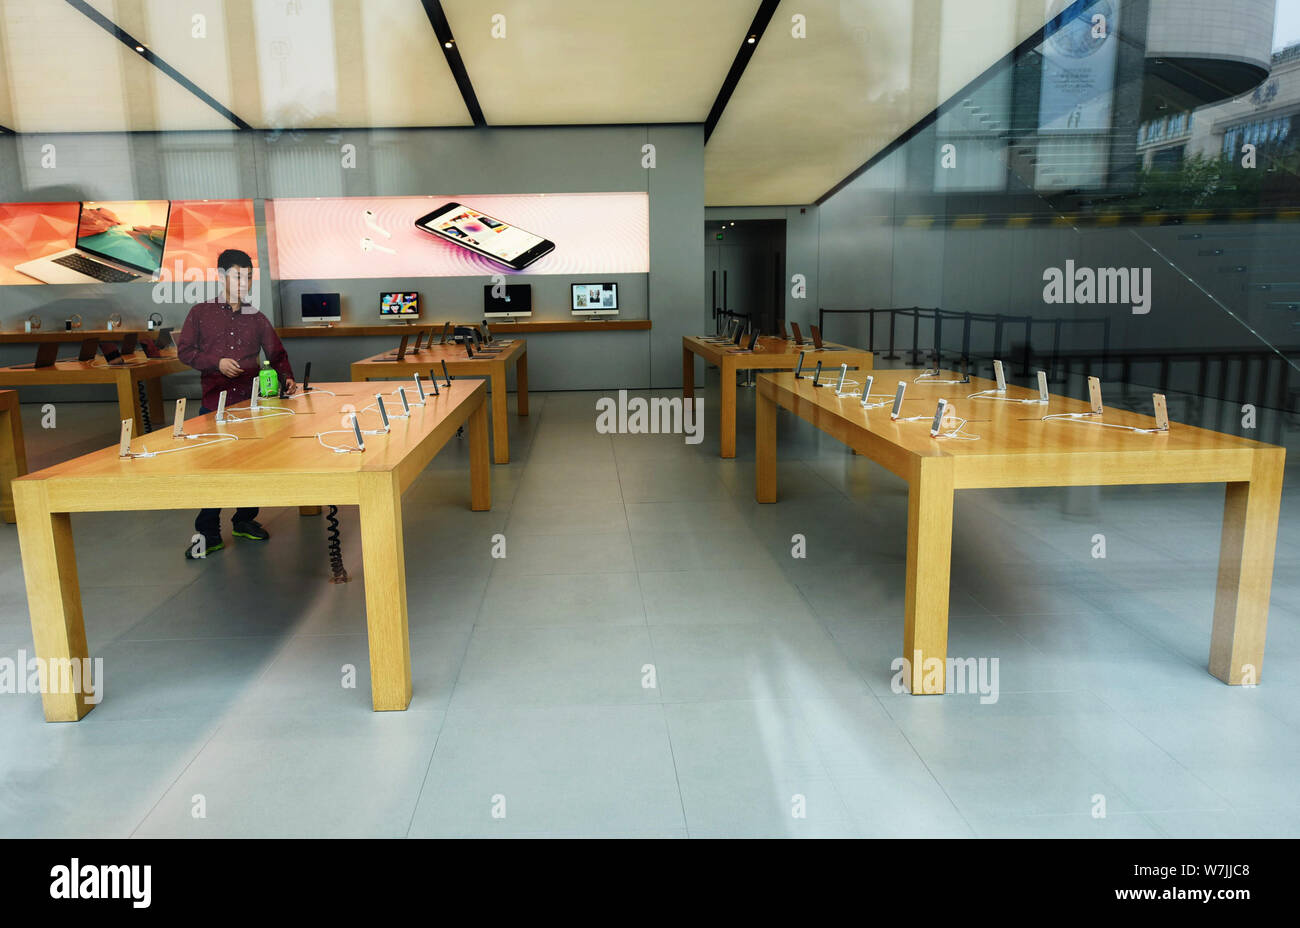 Eine chinesische Shopper versucht, ein iPhone 8 Smartphone zu einem Flagship Store von Apple in Hangzhou City, East China Zhejiang provinz, 22. September 2017. Stockfoto